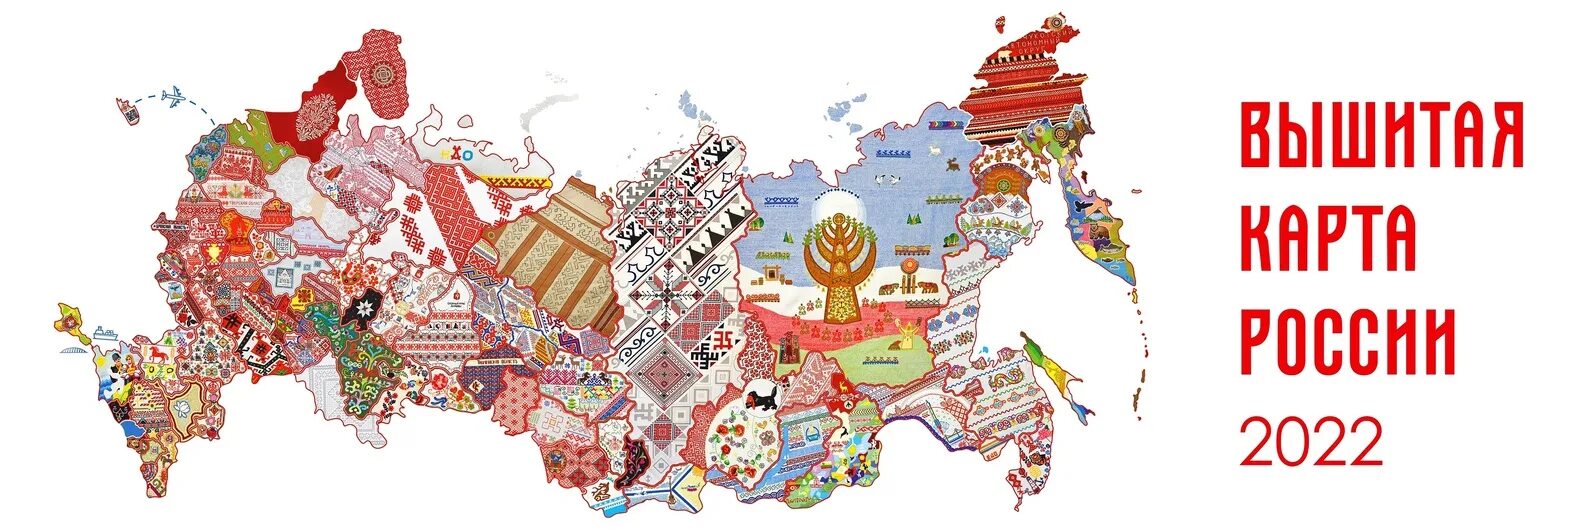 Вышитая карта россии разговоры о важном